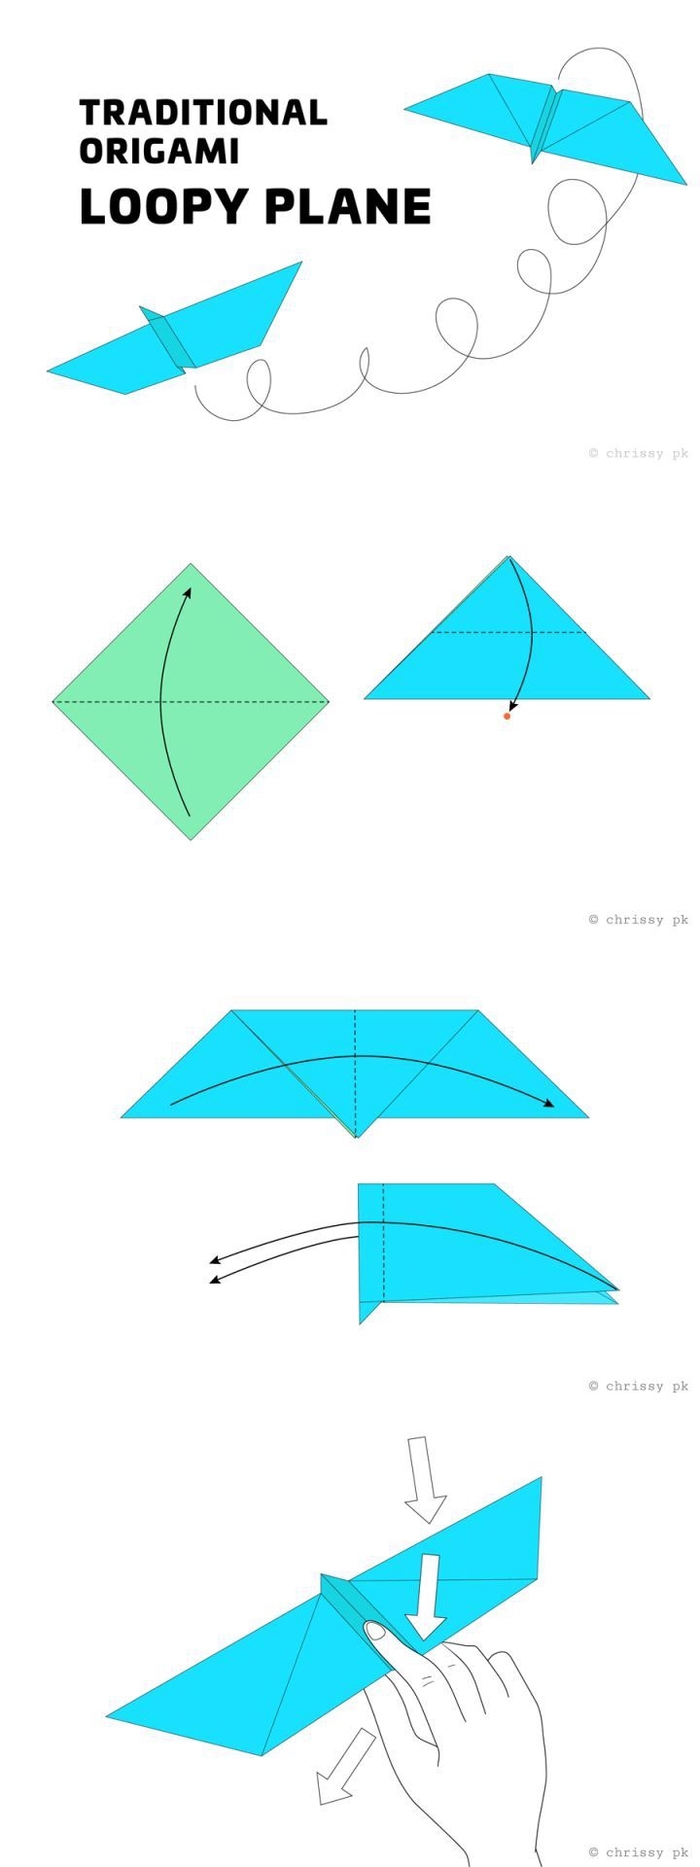 comment fabriquer un avion en papier à design origami traditionnel qui fait des loopings, tuto pour débuter bien dans le pliage papier origami